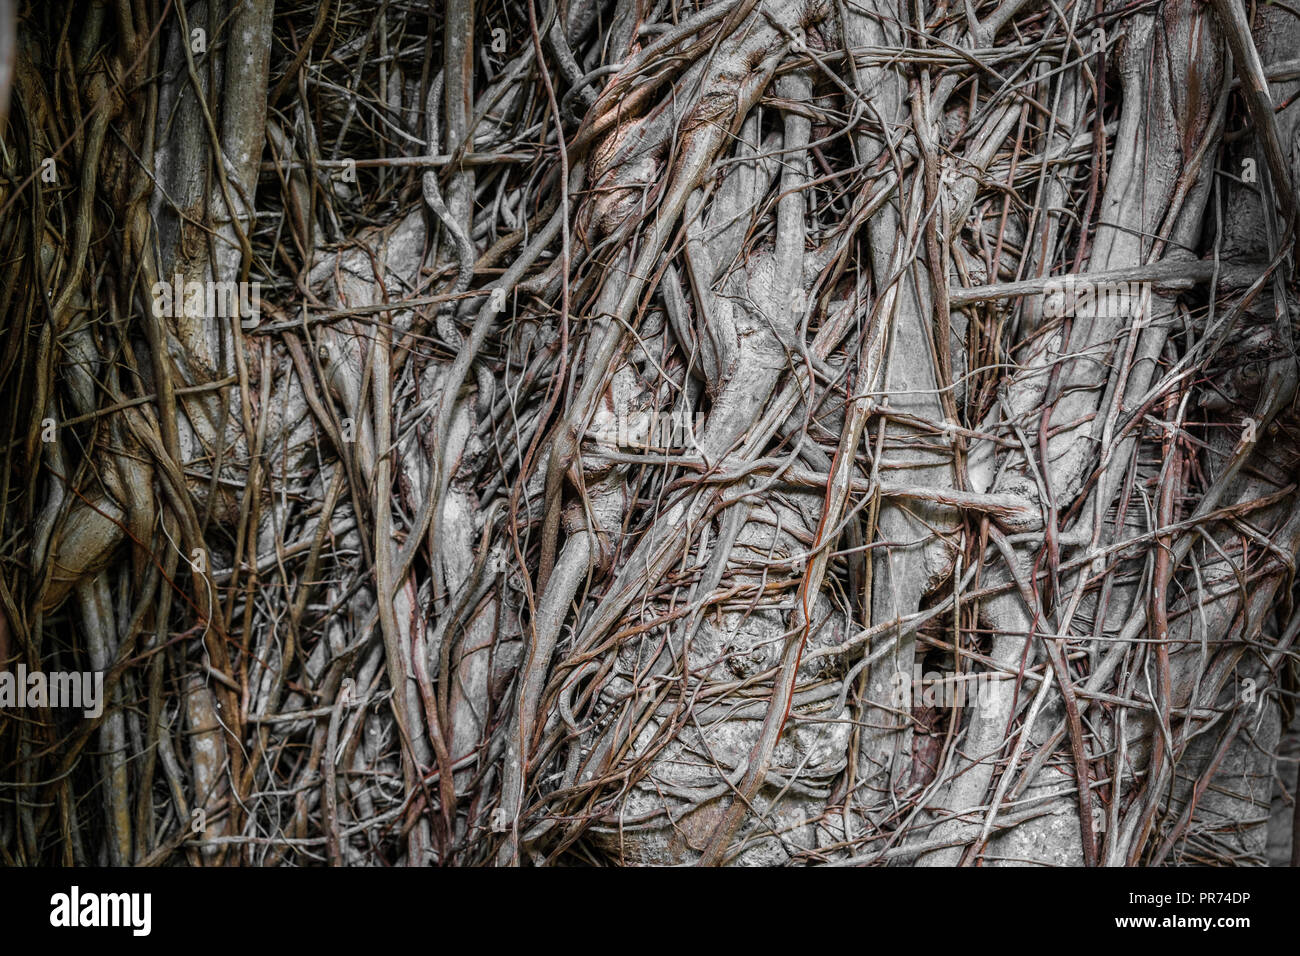 Chaotische Wurzeln auf tropischen Baum - Chaos Konzept - Stockfoto